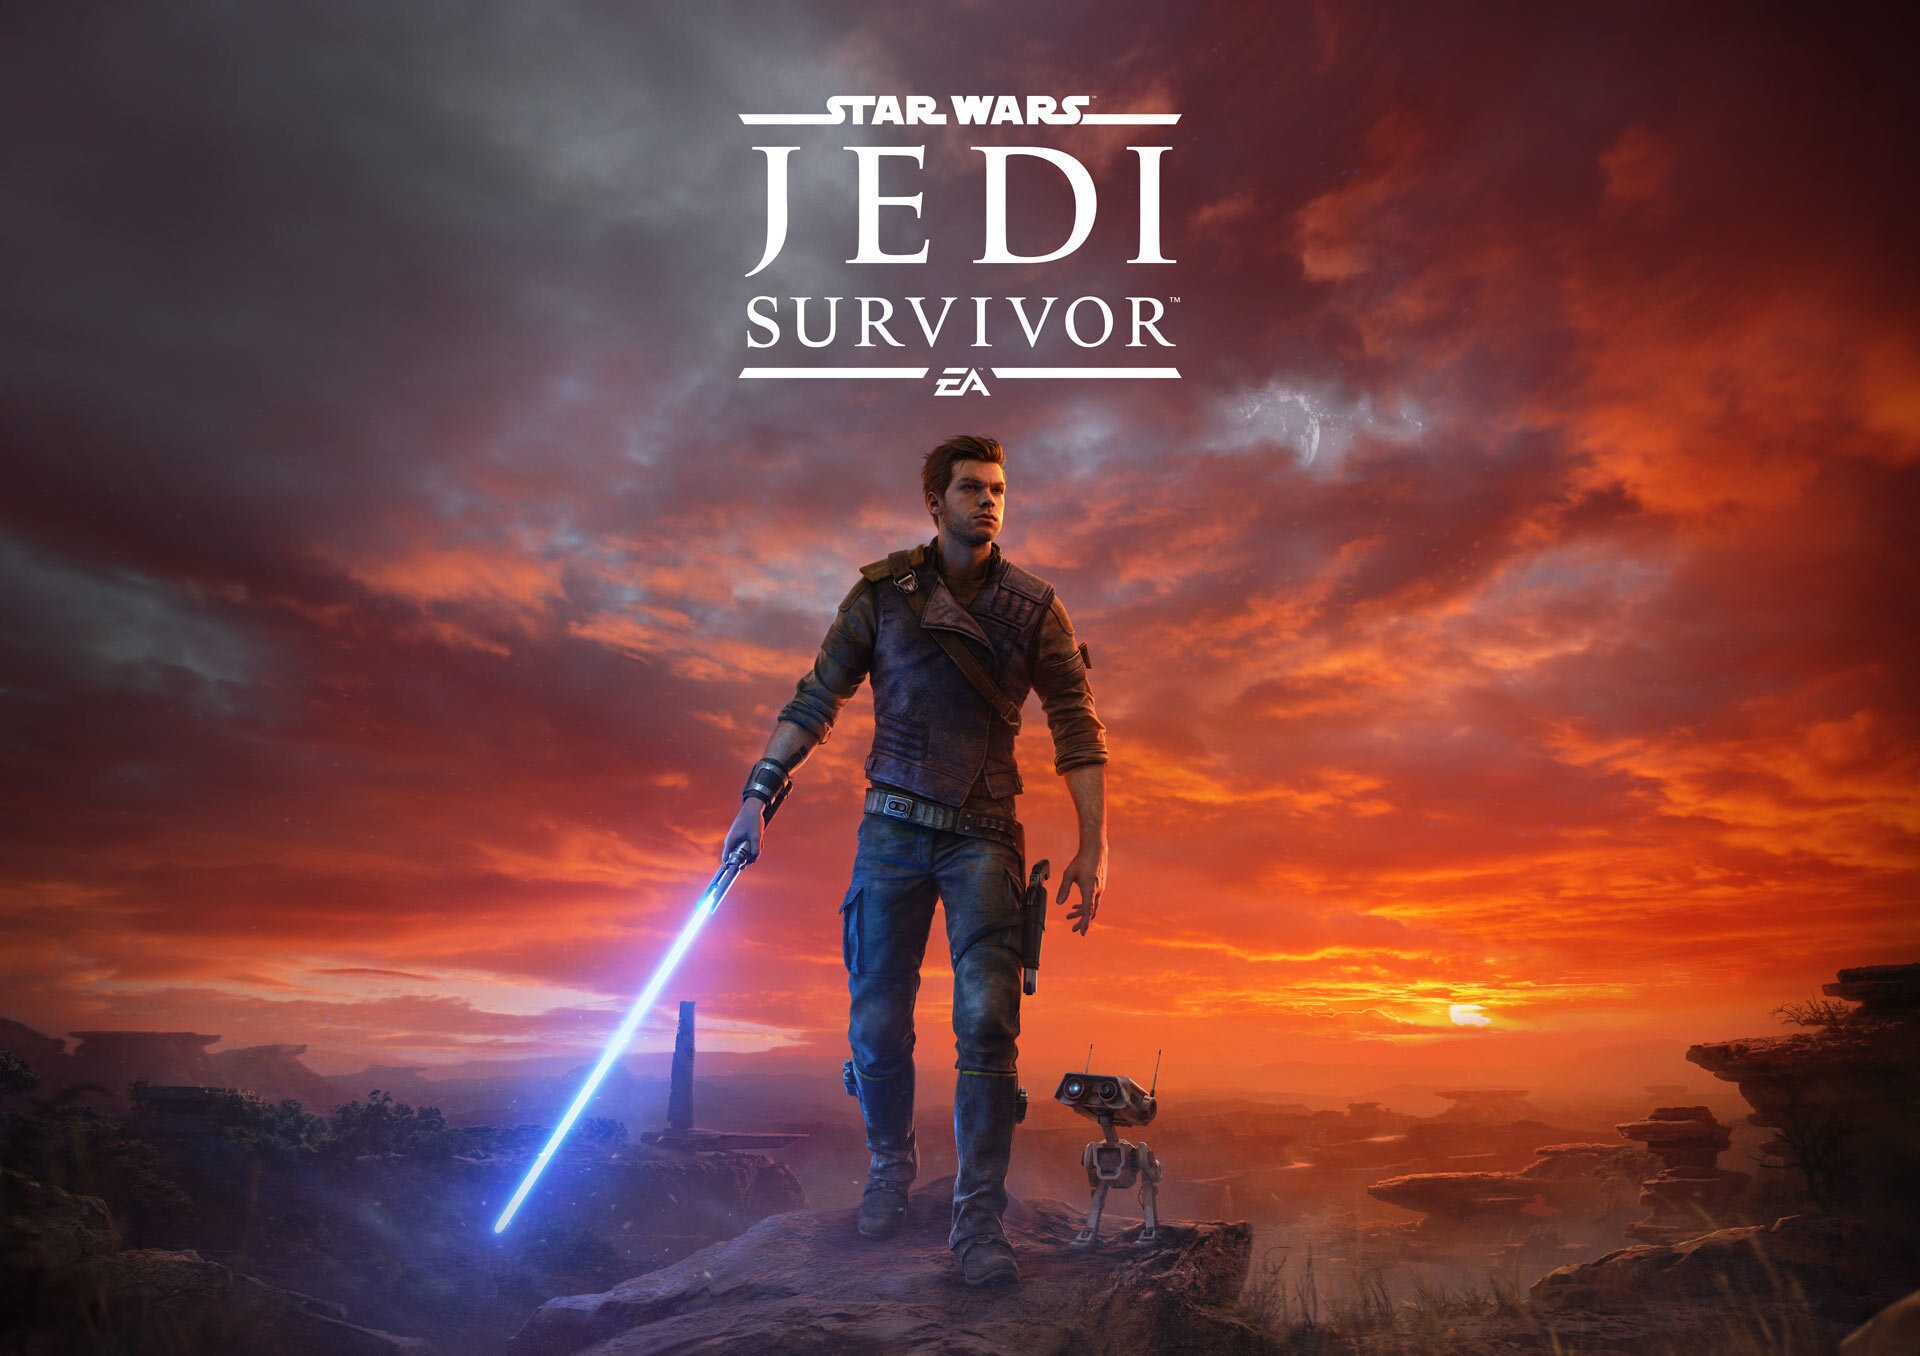 Star Wars Jedi Survivor key art